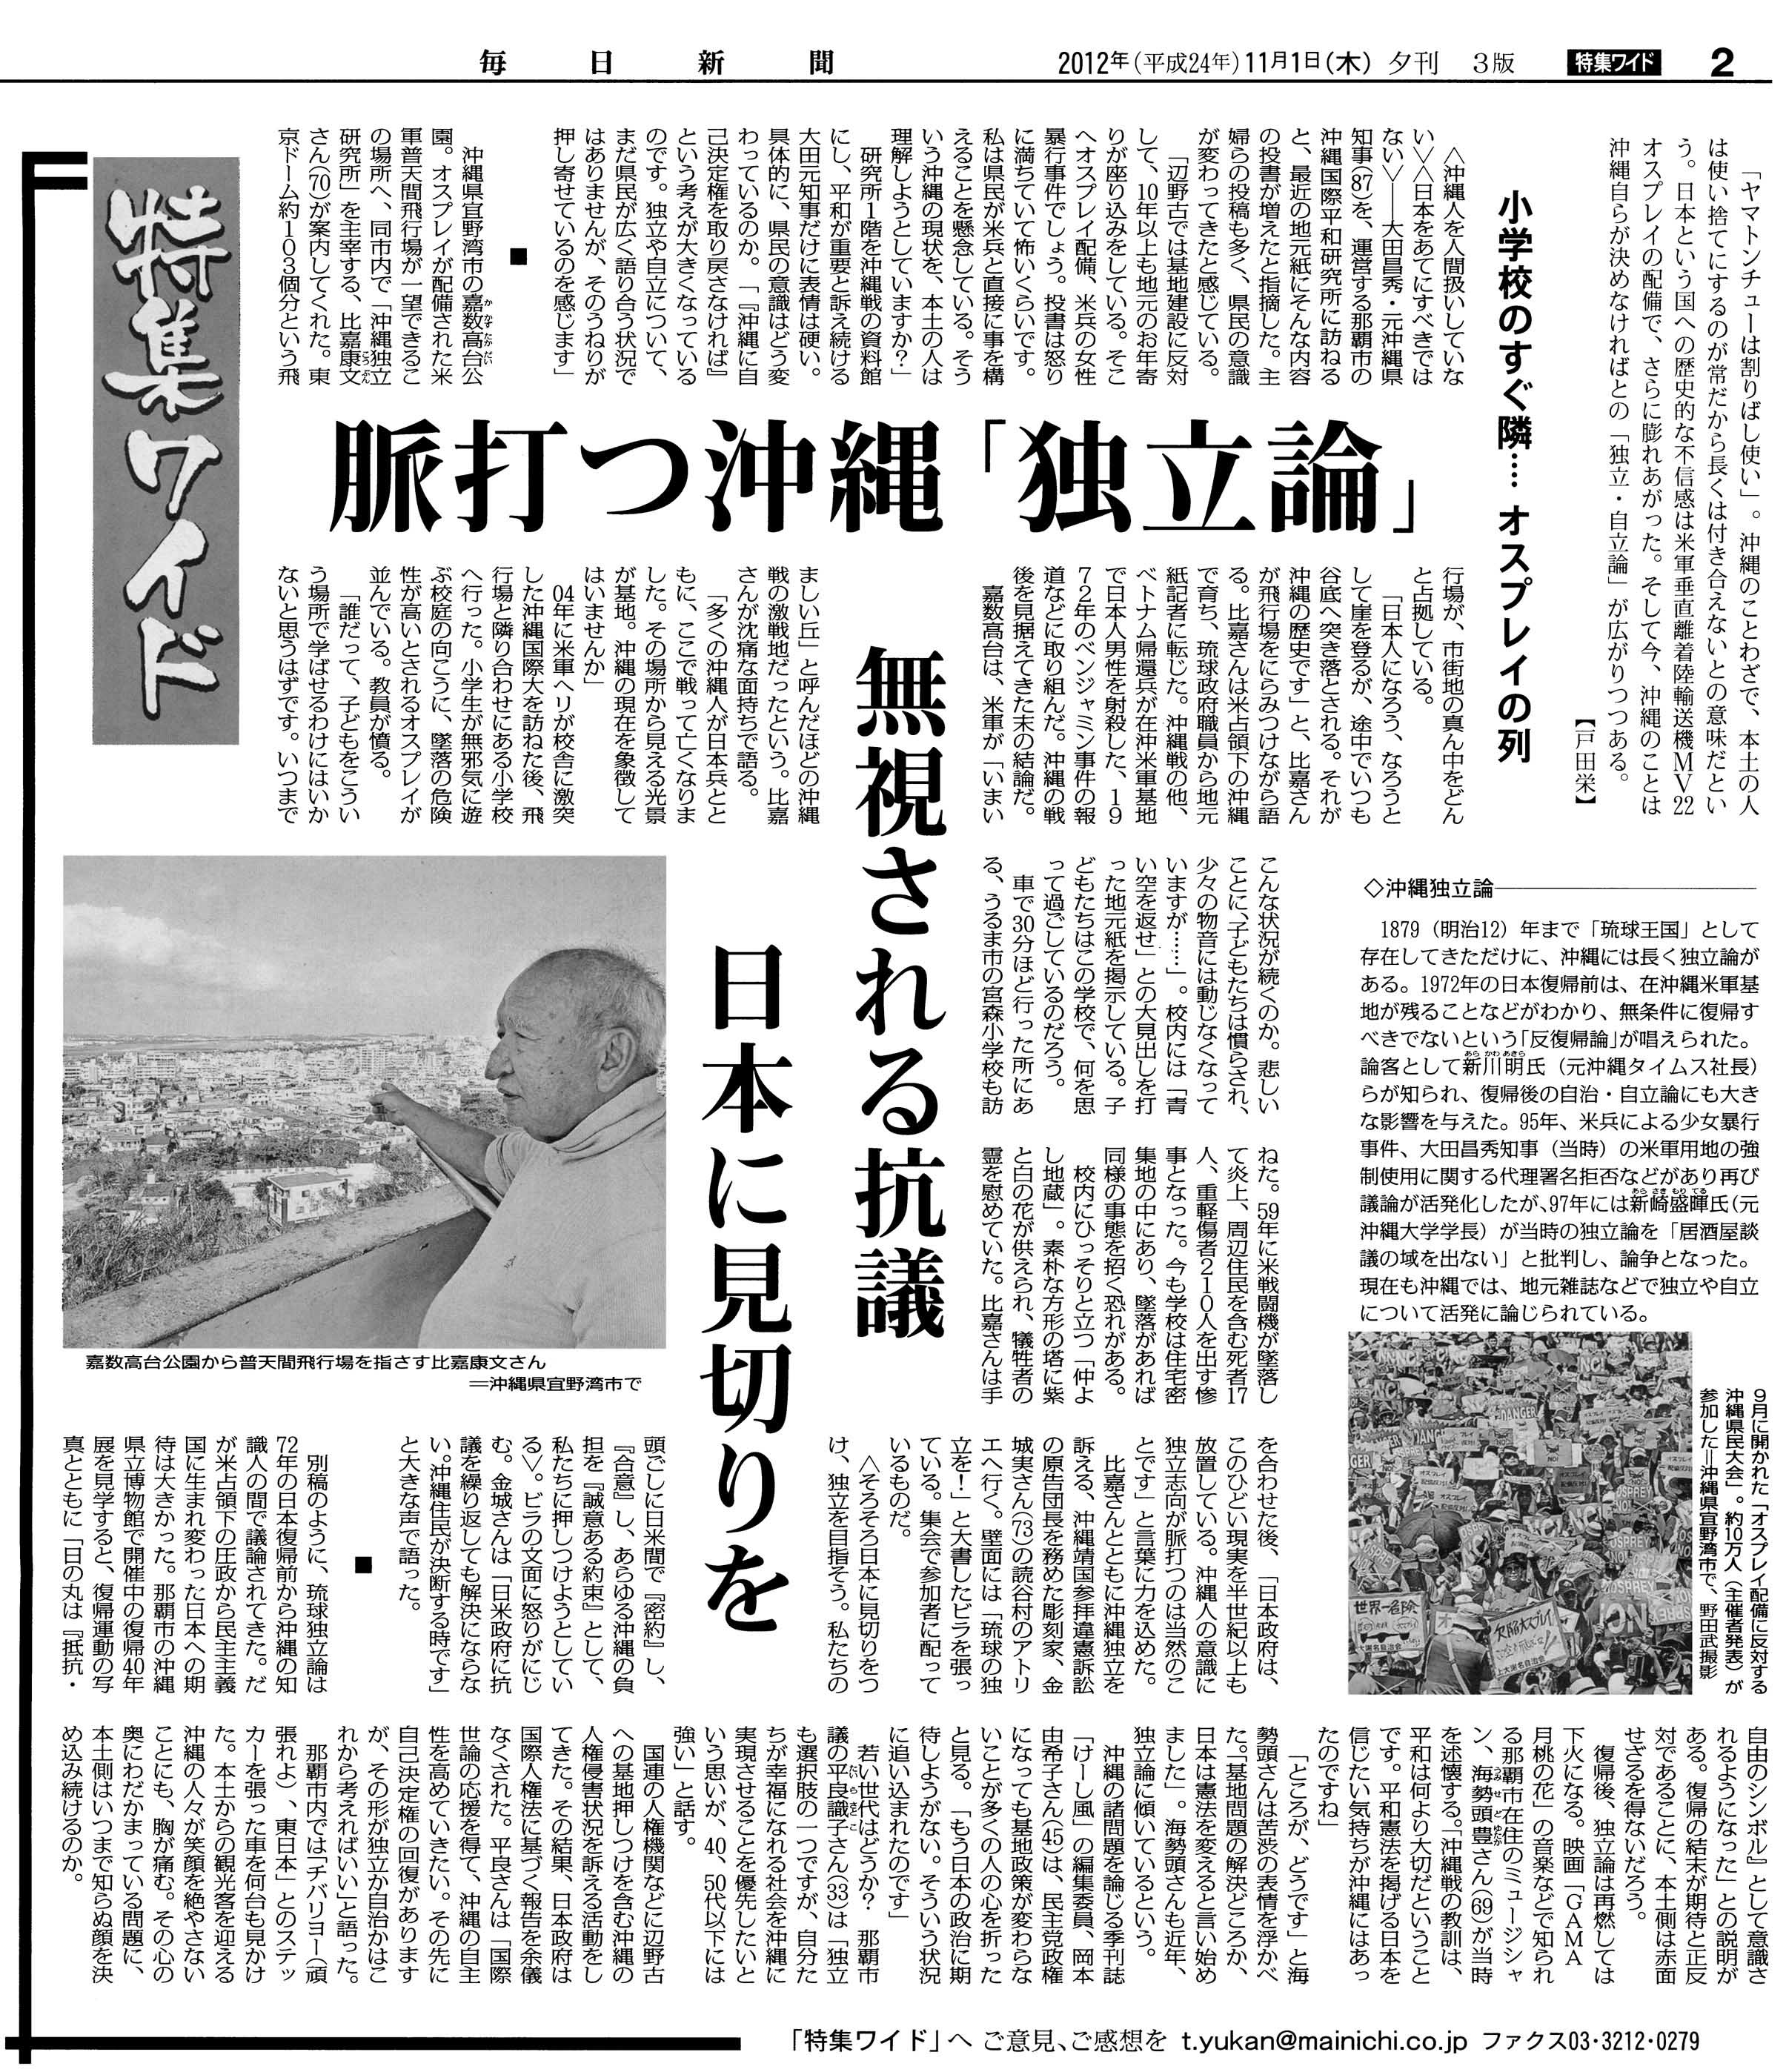 脈打つ沖縄「独立論」